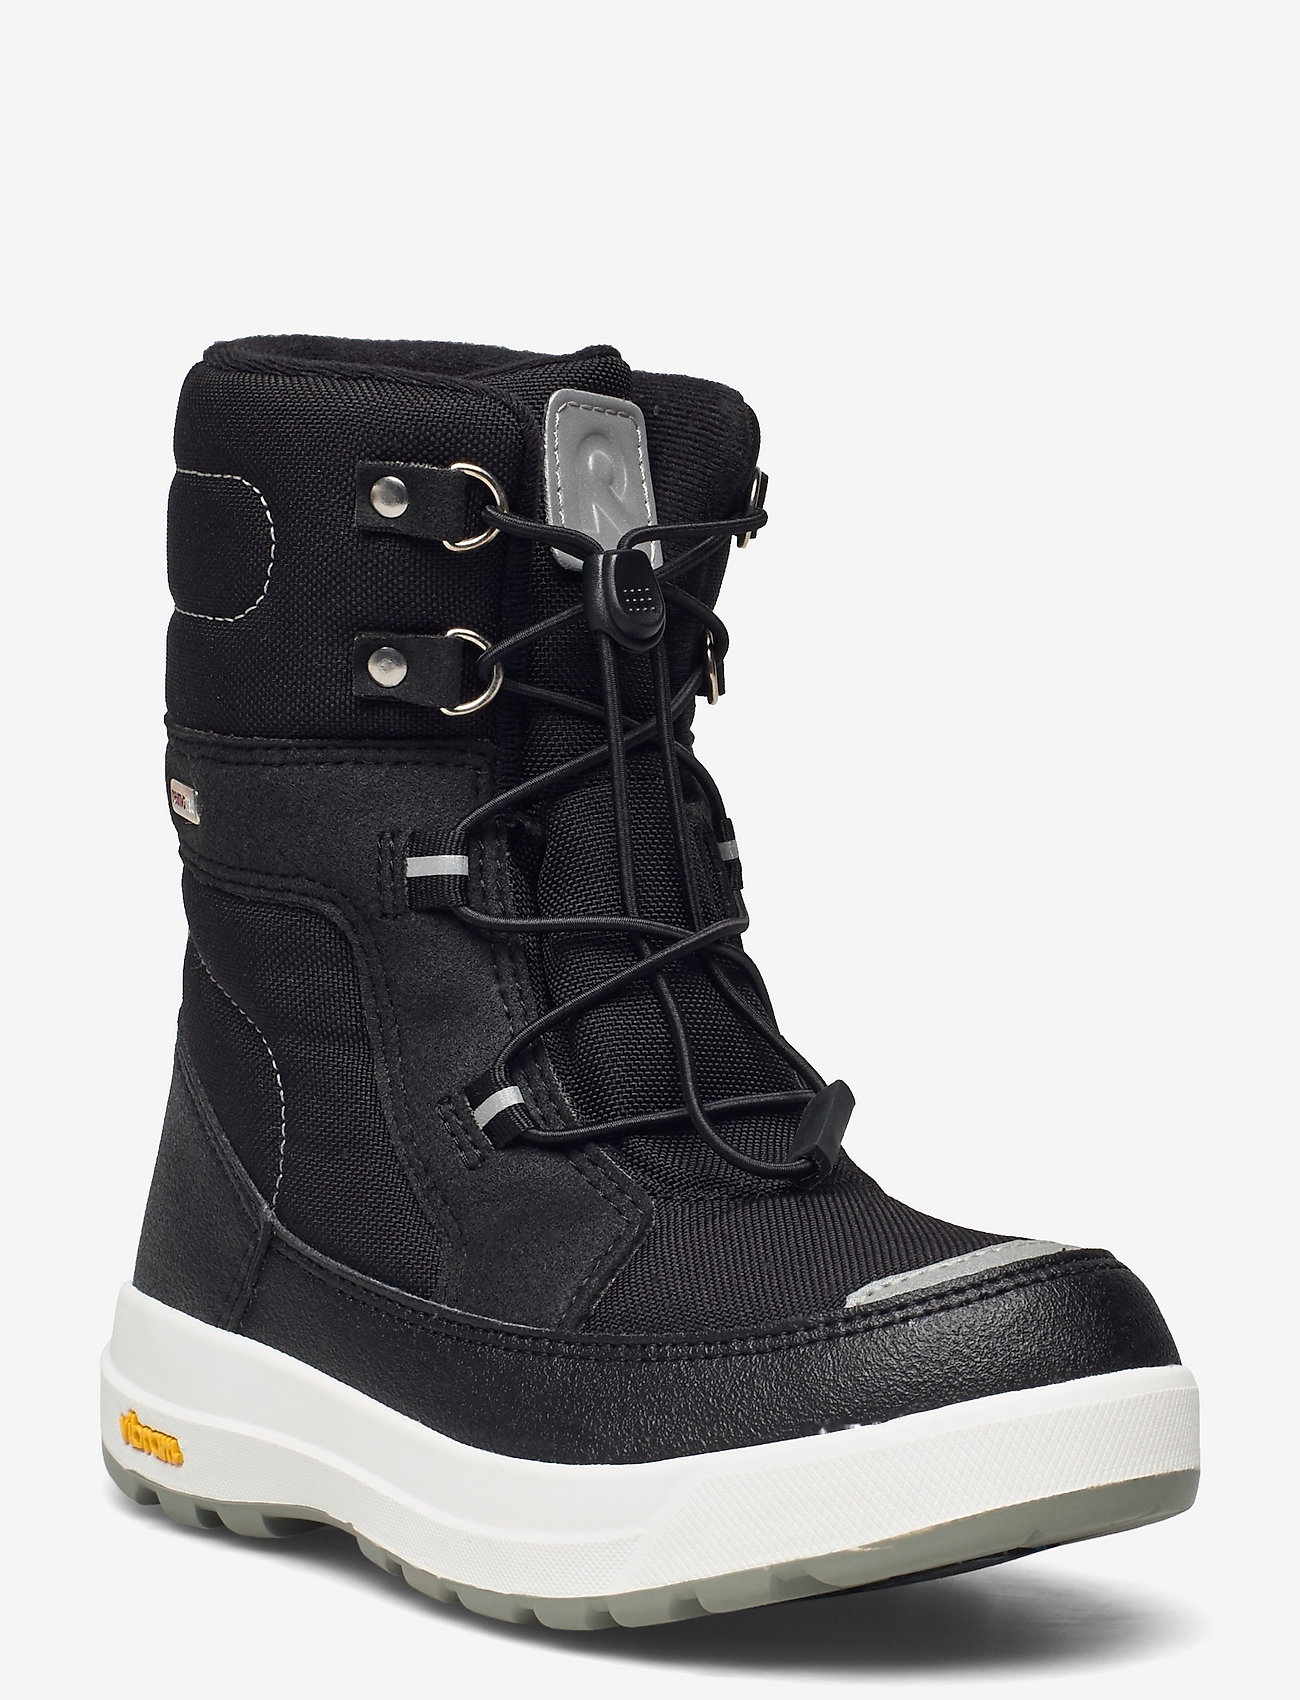 Reima - Kids' winter boots Laplander - talvikengät - black - 0